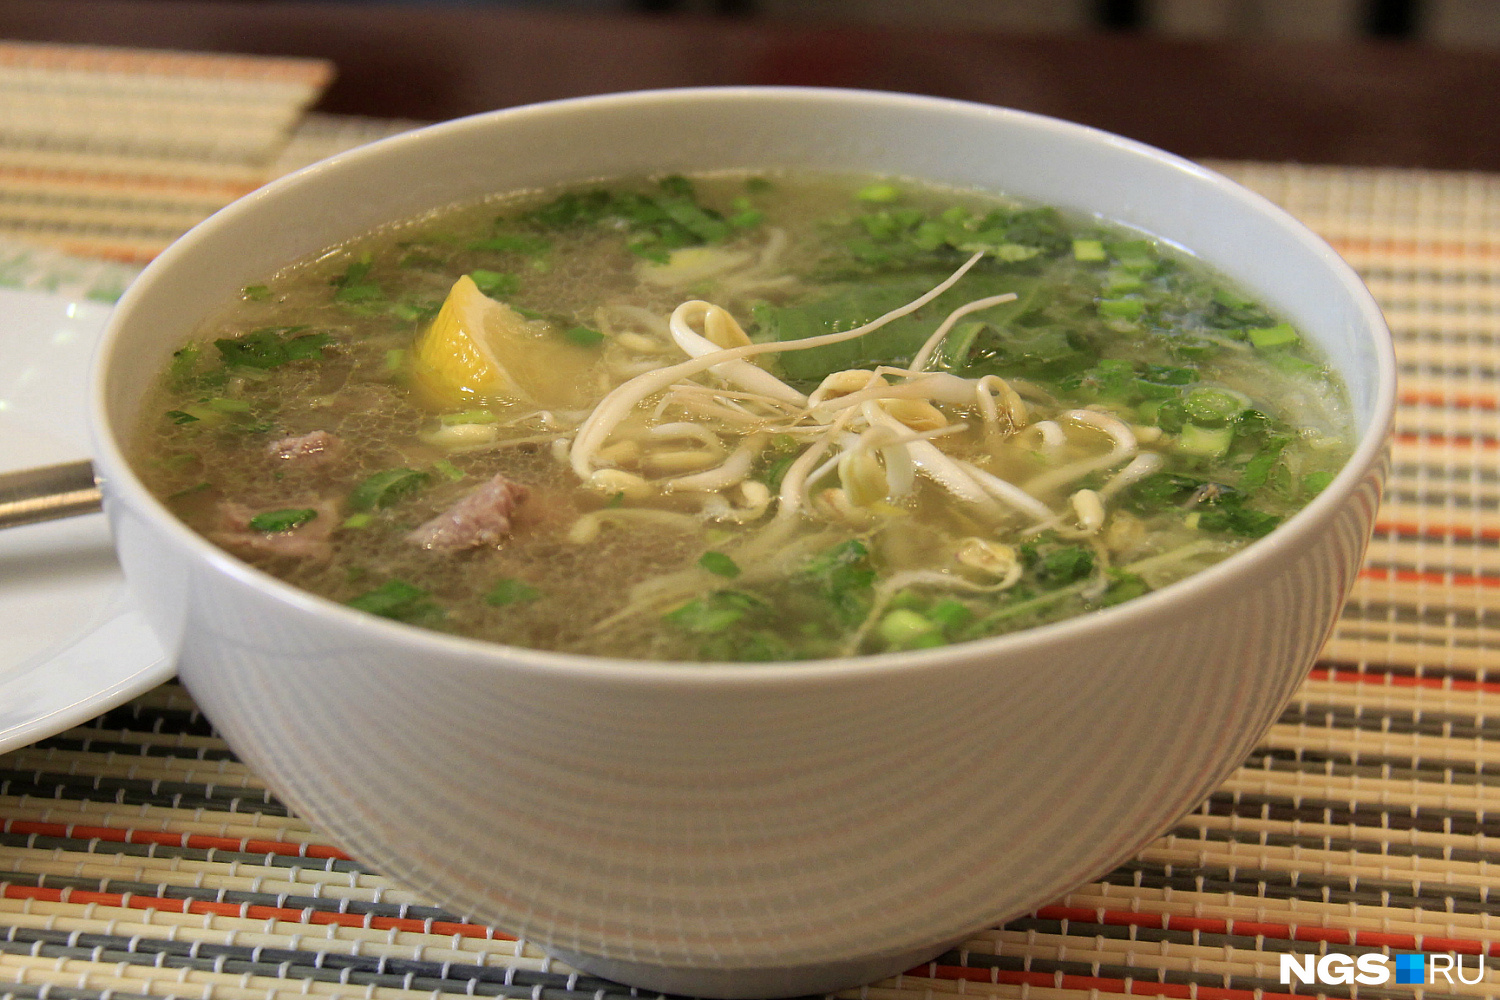 Порция супа Фо Бо стоит 180 рублей. Рыбный соус, зелень и перец чили можно положить по вкусу